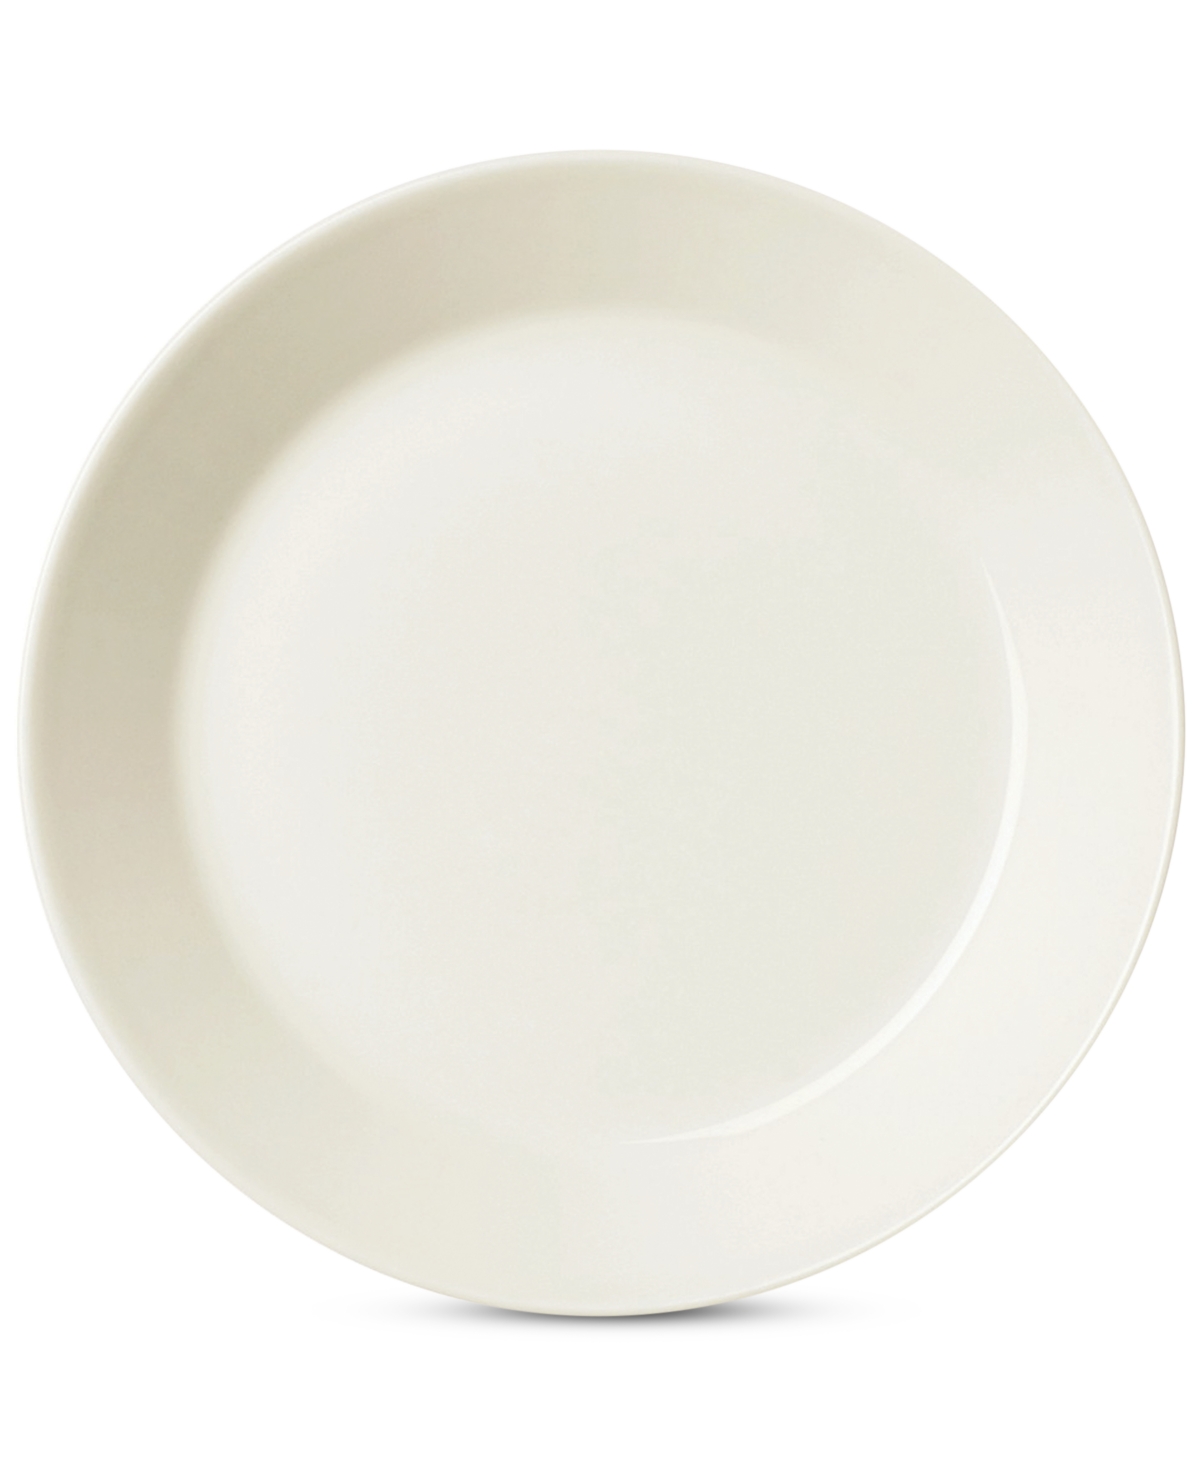 Teema White Bread & Butter Plate - White